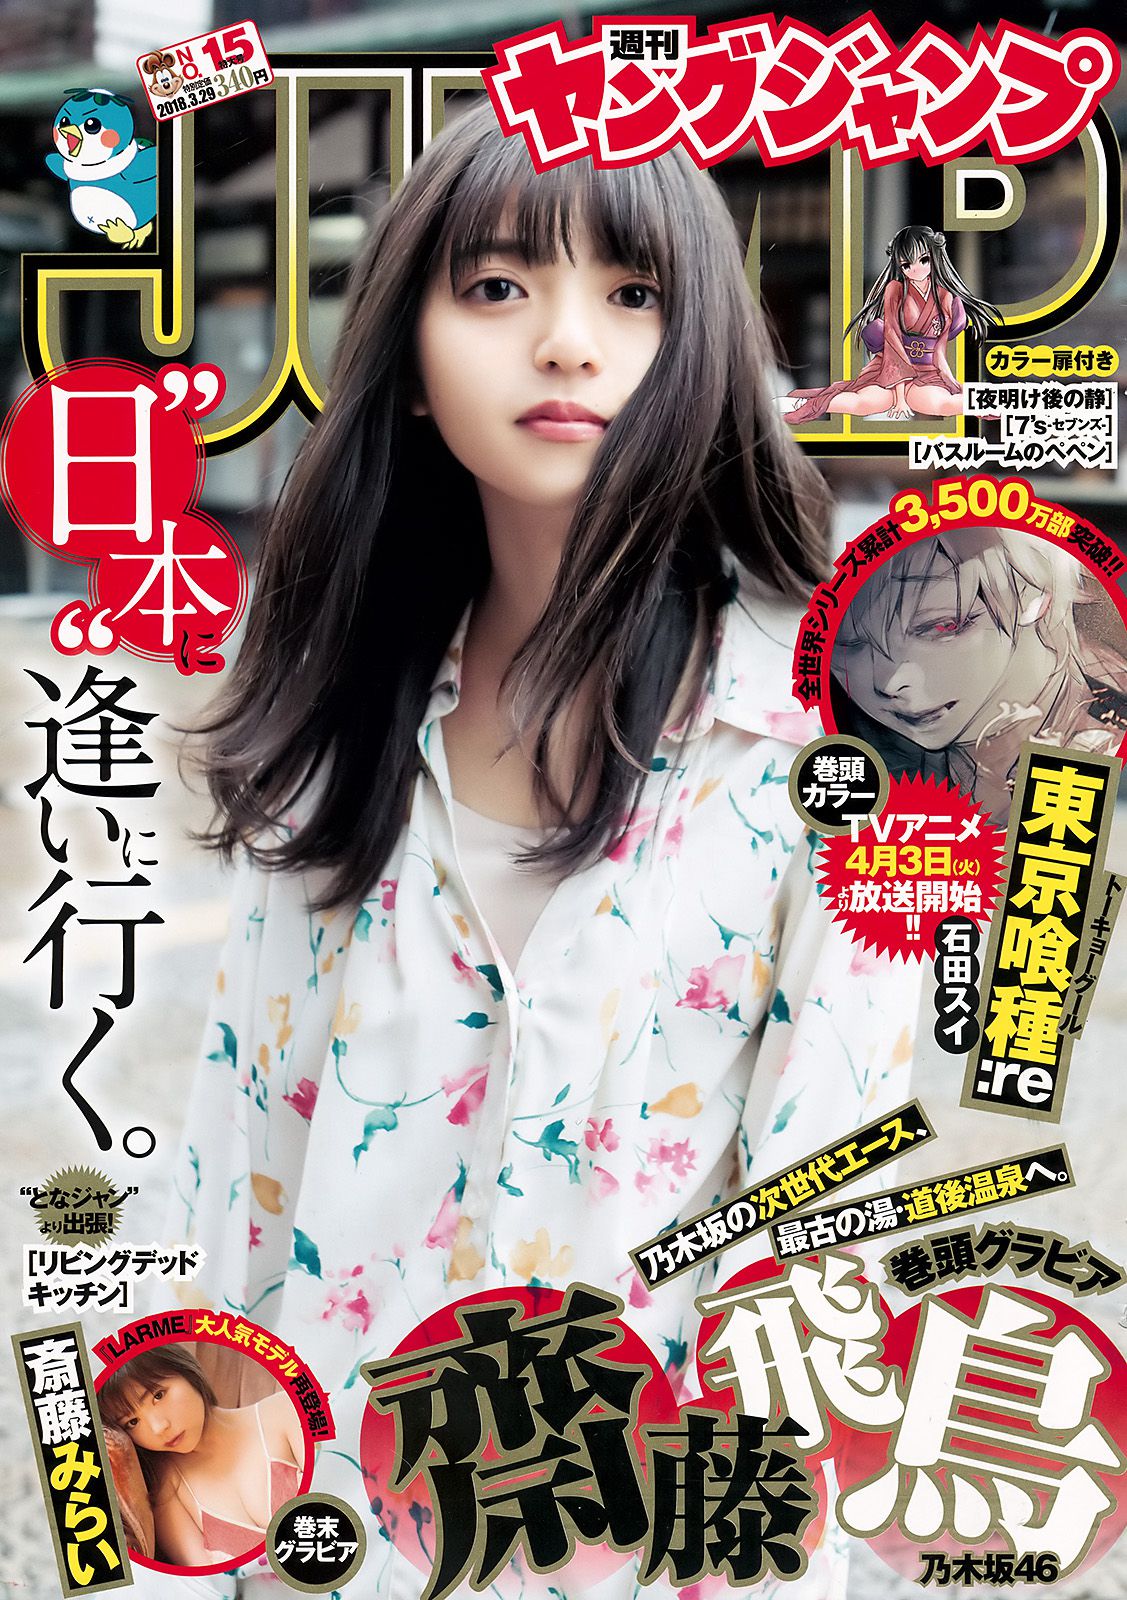 齋藤飛鳥 斉藤みらい [Weekly Young Jump] 2018年No.15 写真杂志1